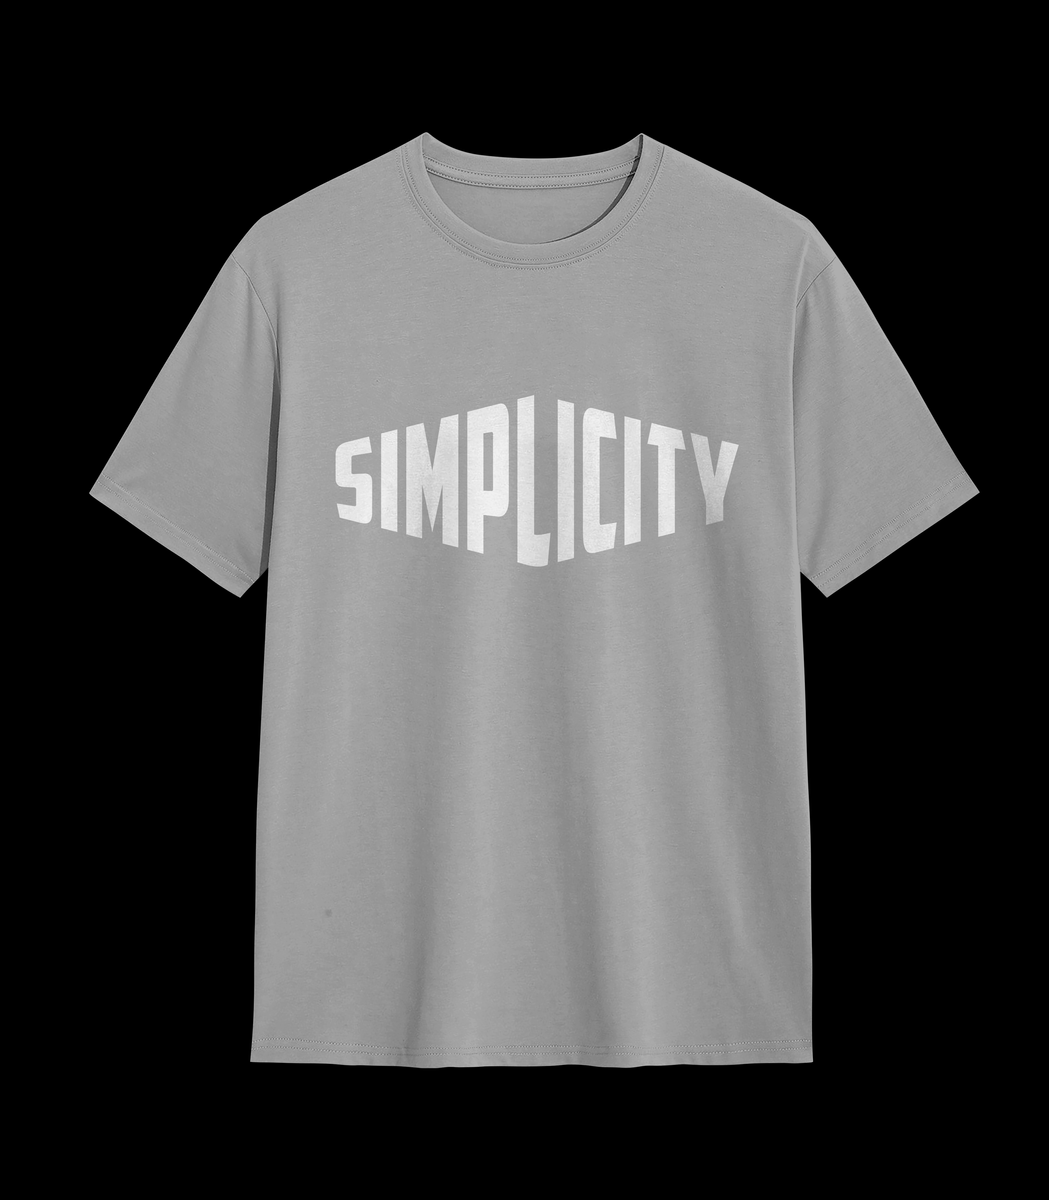 Nome do produto: SIMPLICITY